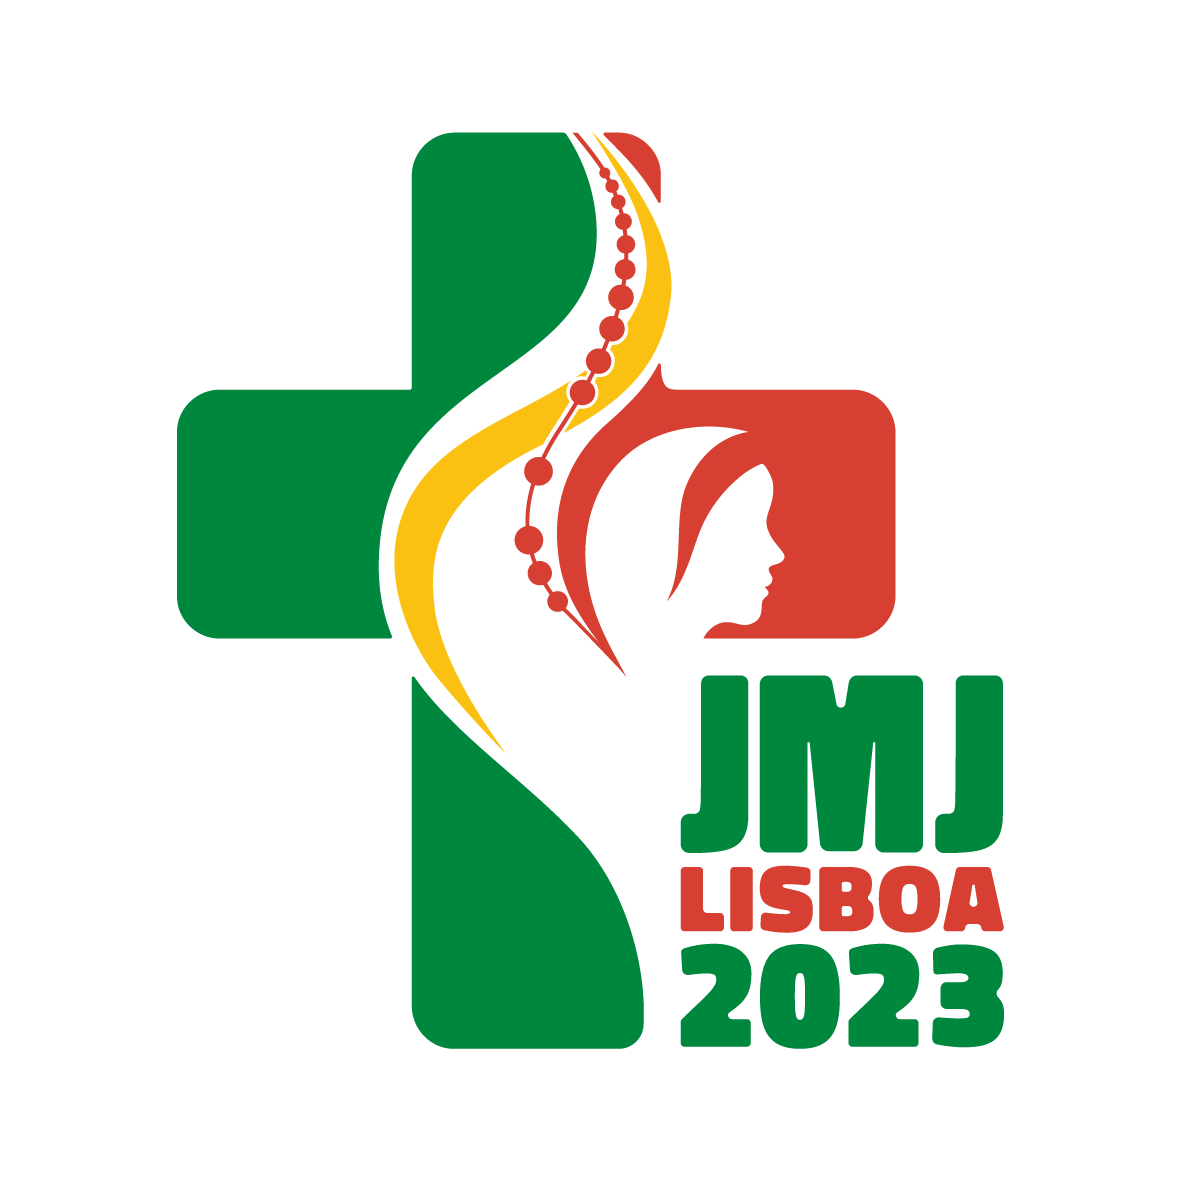 Rumo à JMJ Lisboa 2023: apresentado o logotipo